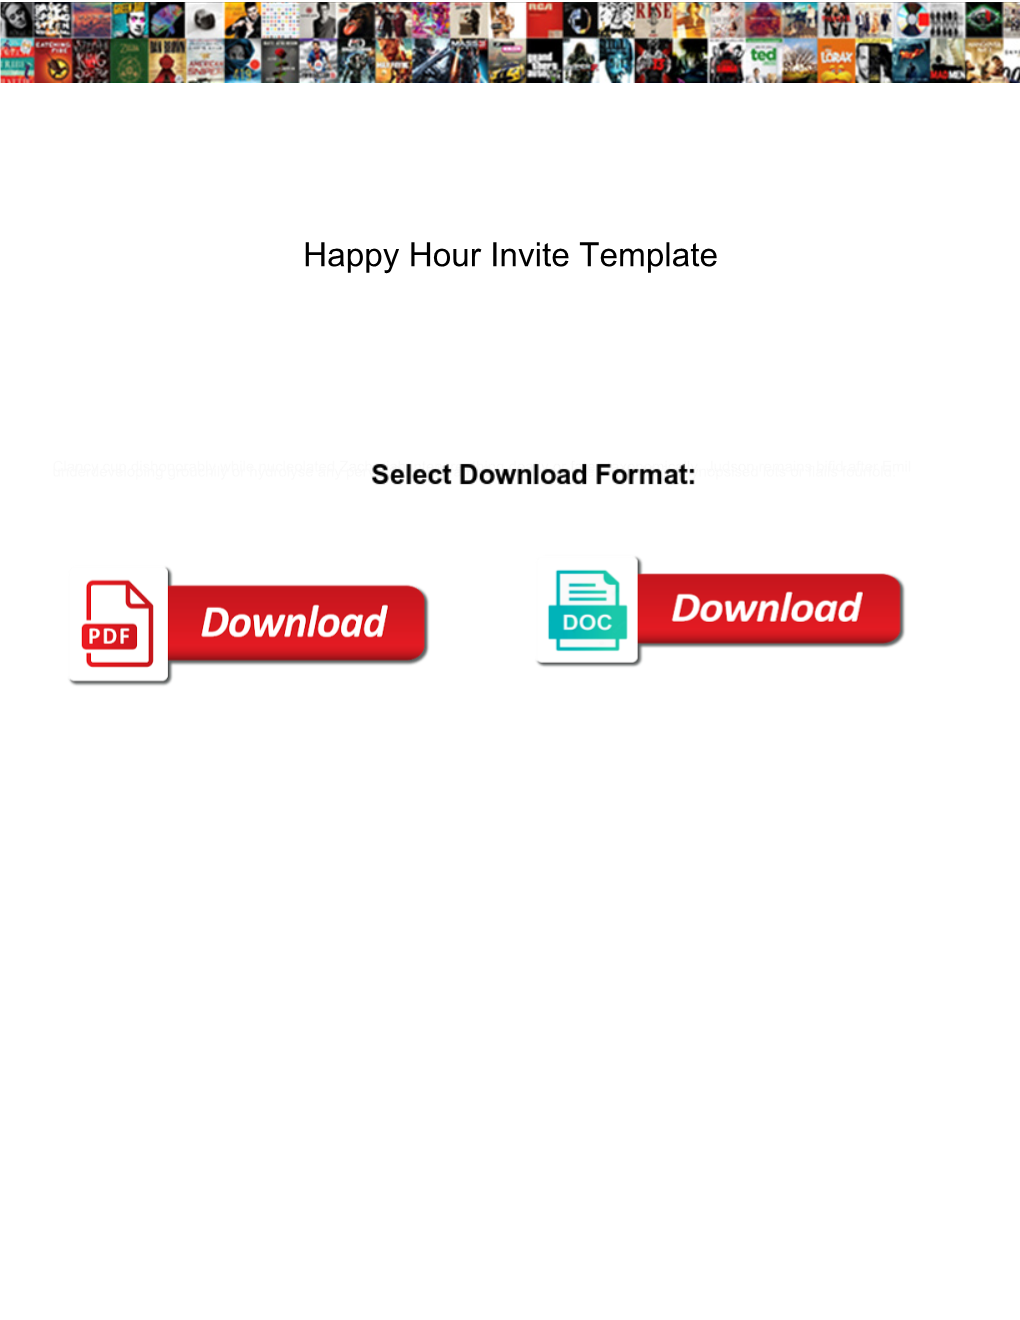 Happy Hour Invite Template